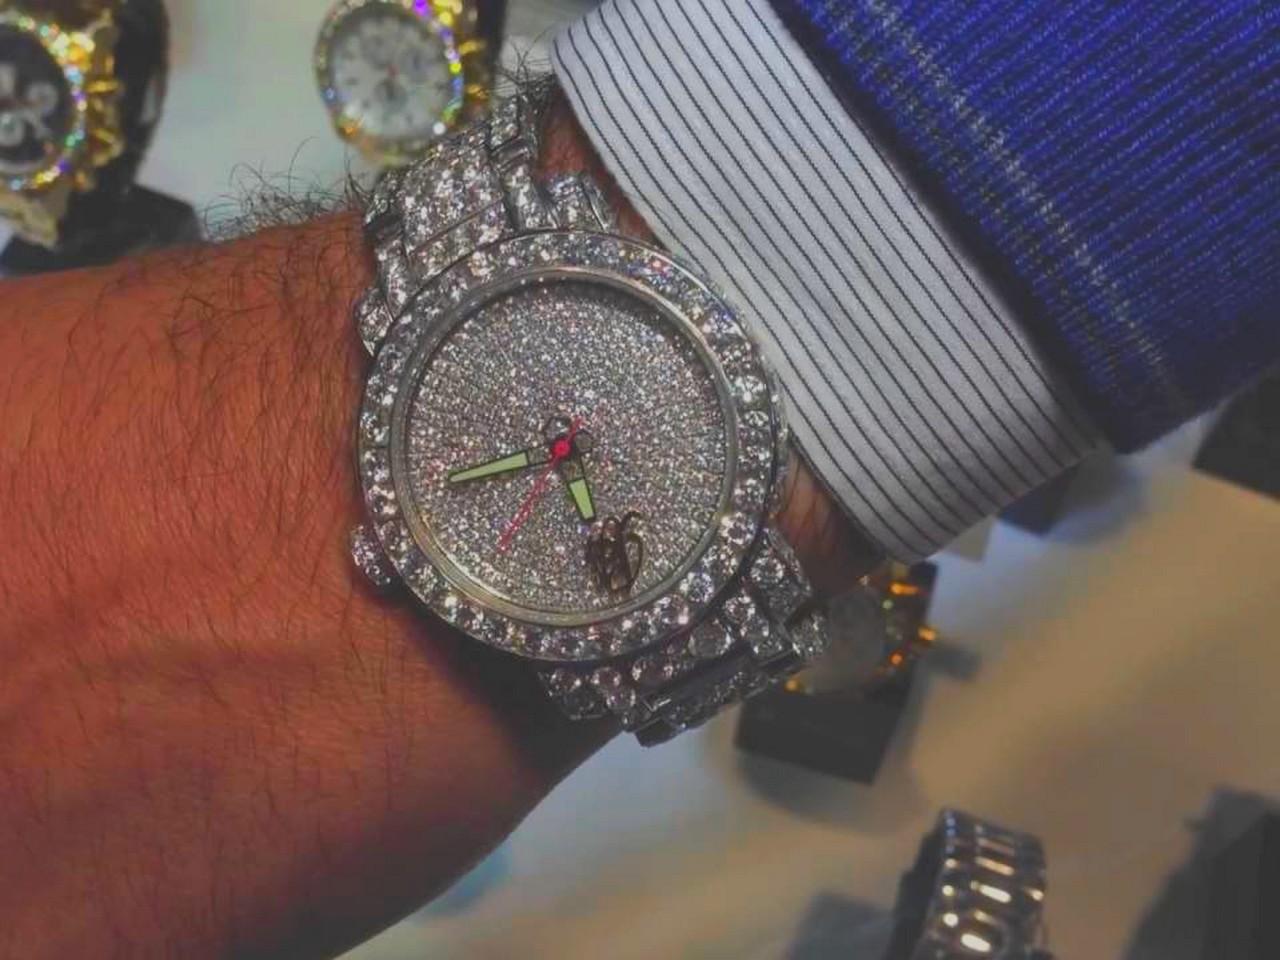 アフターダイヤモンドの腕時計、買取